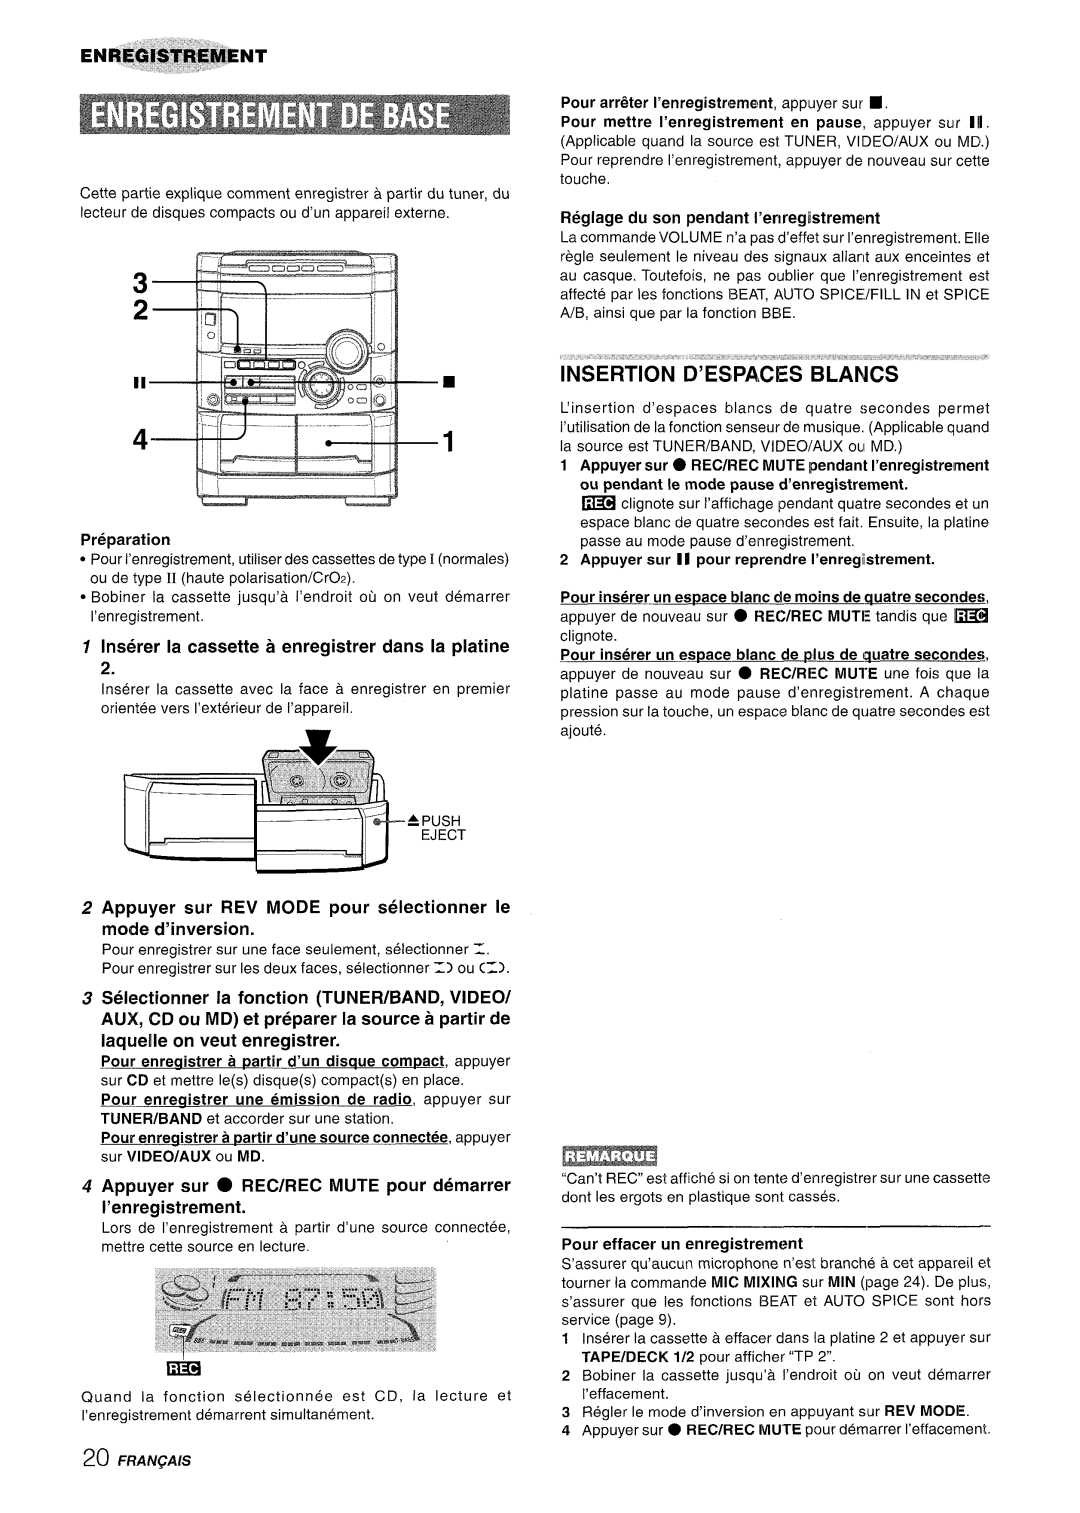 Sony NSX-A777 manual Ii&l, INSERTION D’ESPACES BLANCS ““a”’””’”””“’, Inserer la cassette a enregistrer clans la platine 